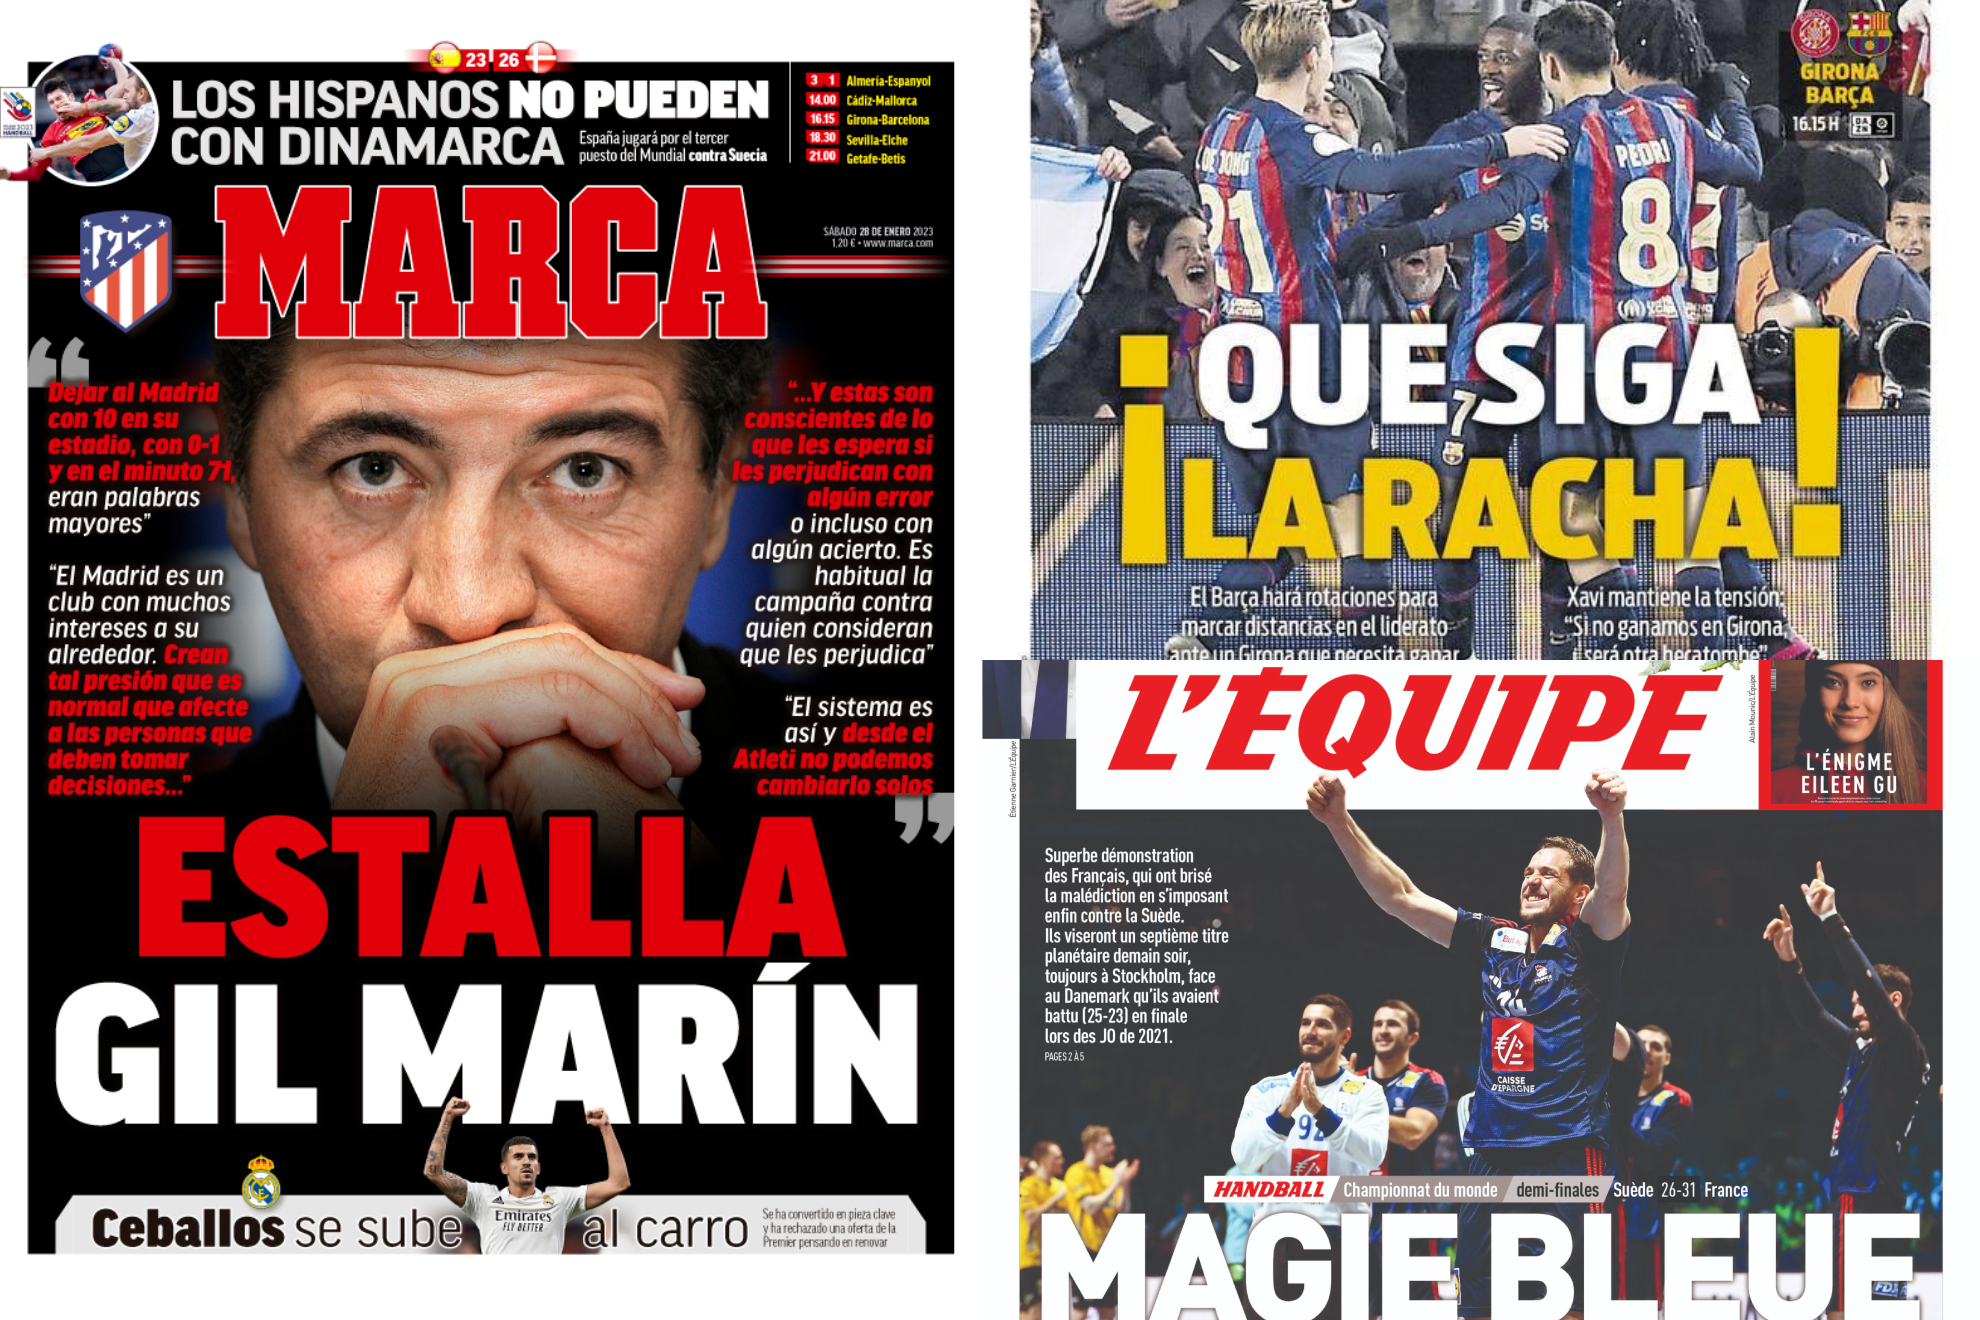 Las portadas: 'Estalla Gil Marín' y mucho más